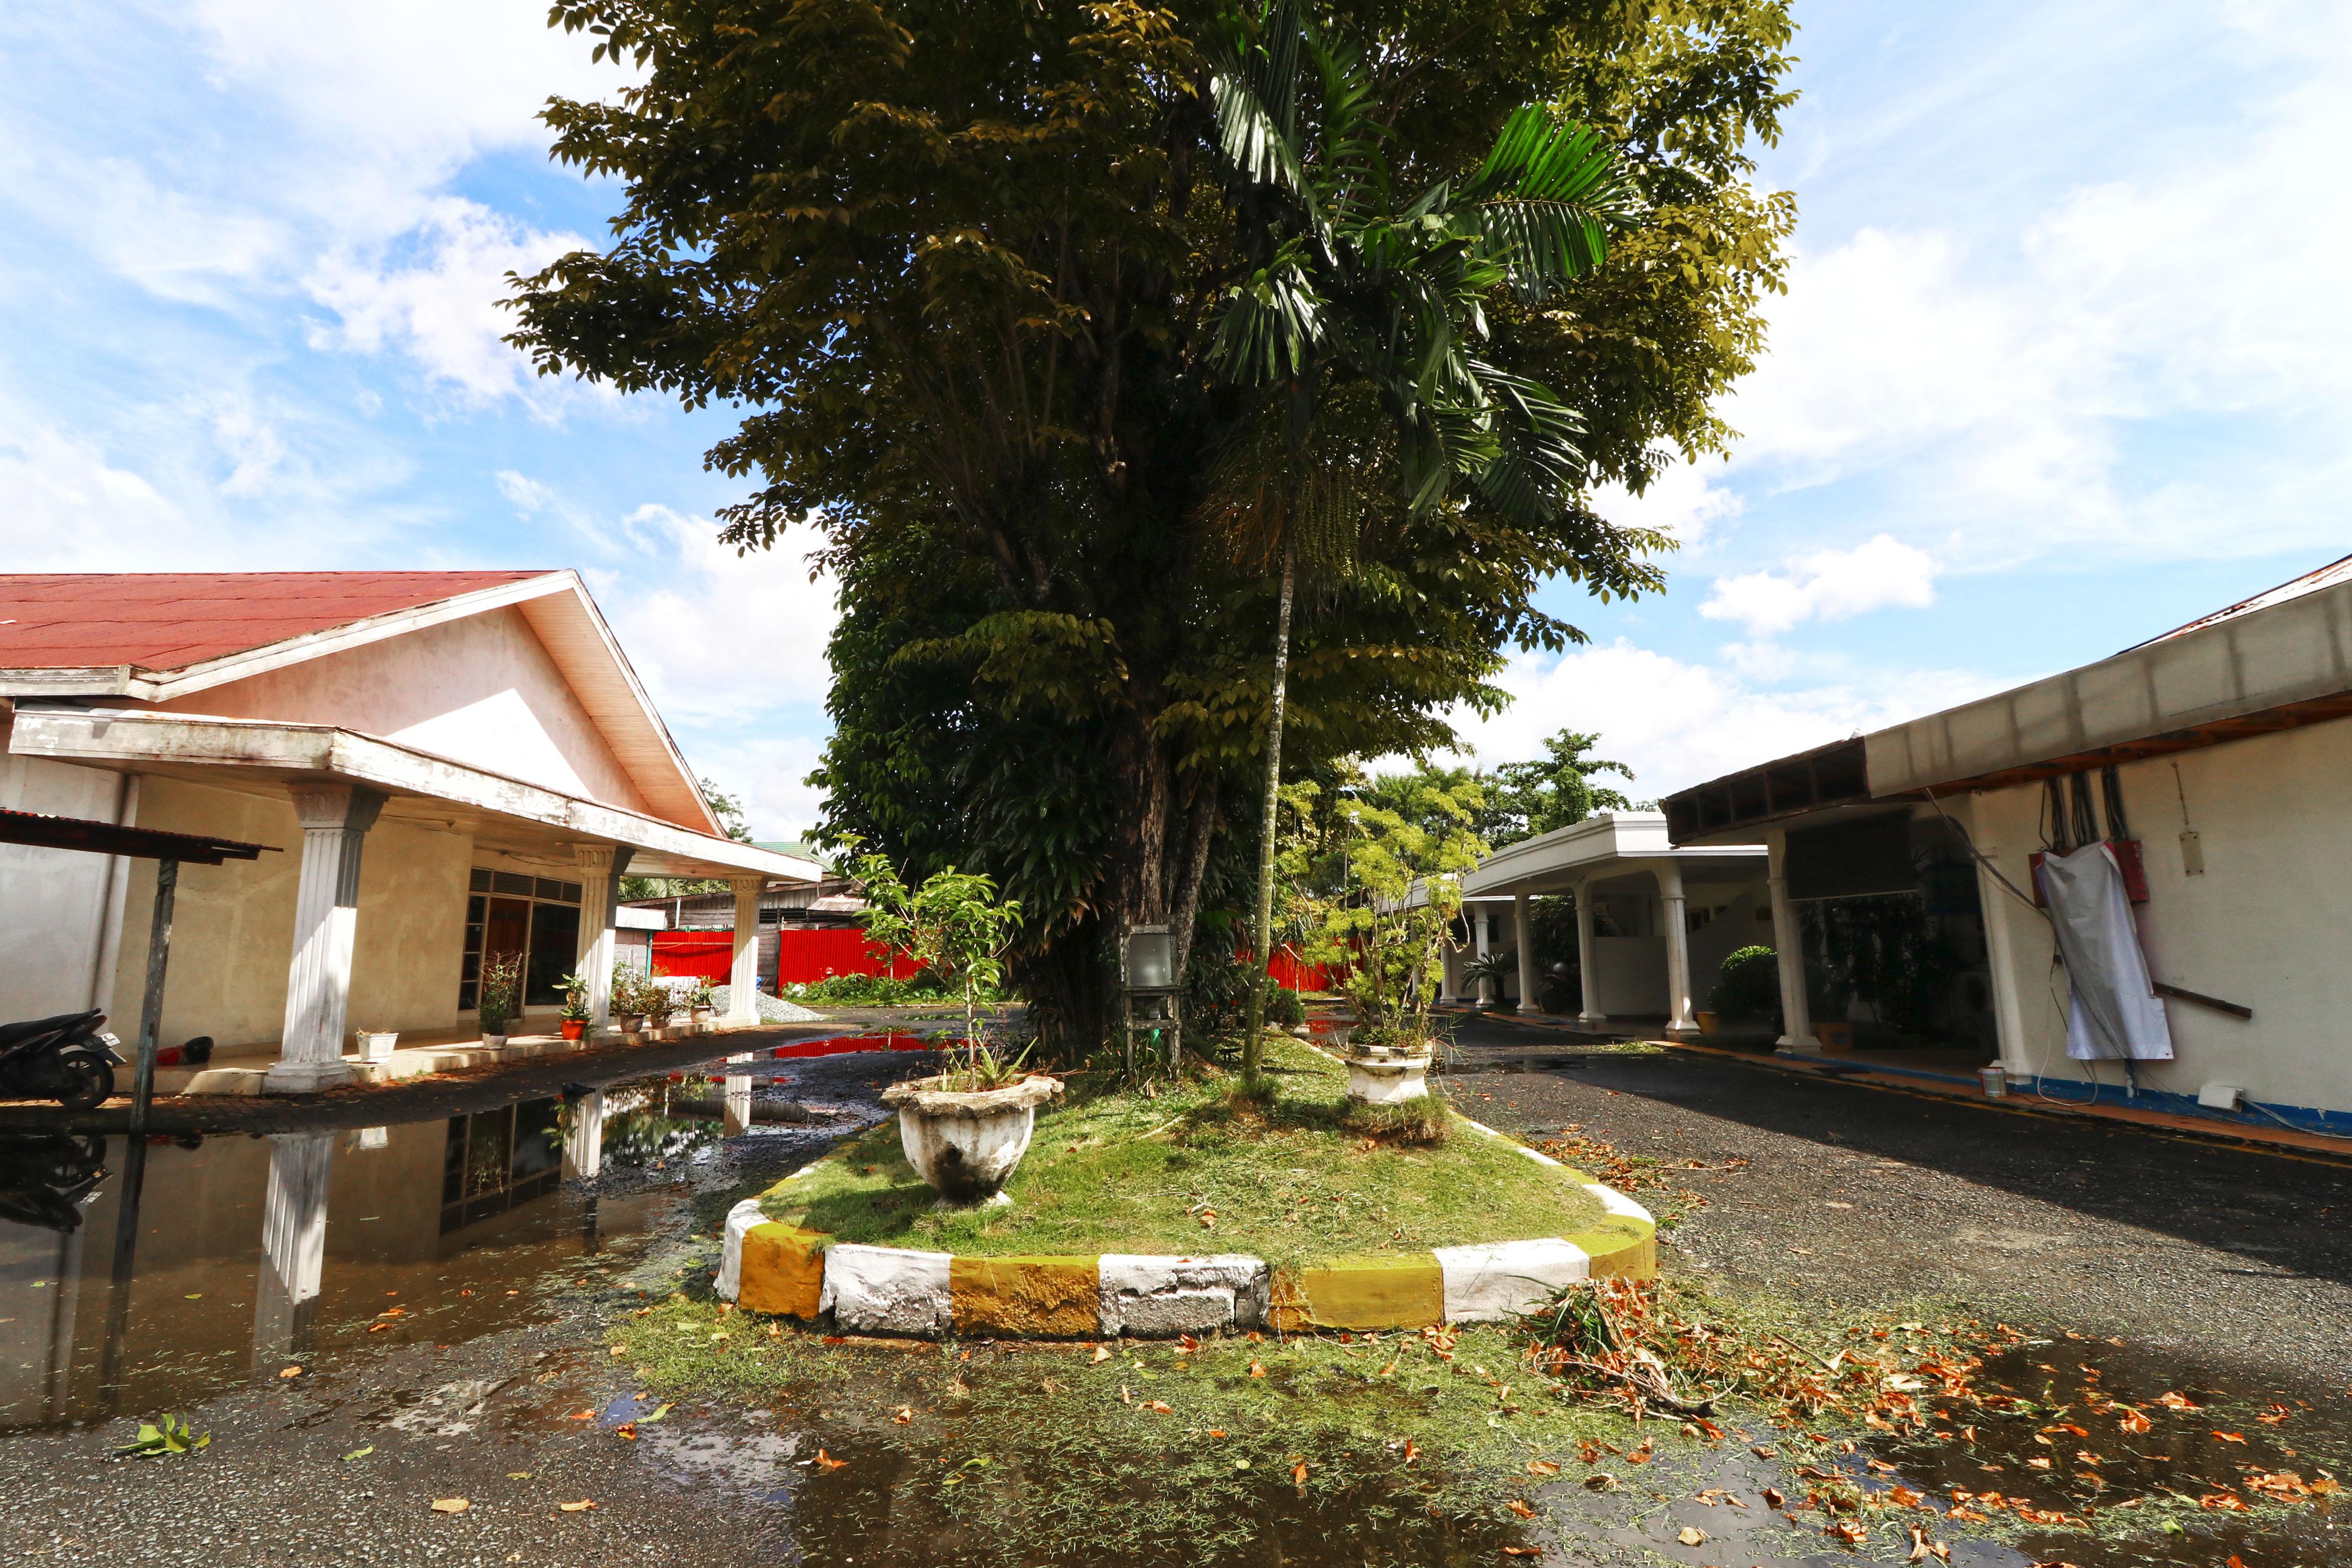 Hotel Sampaga Banjarmasin  Bagian luar foto